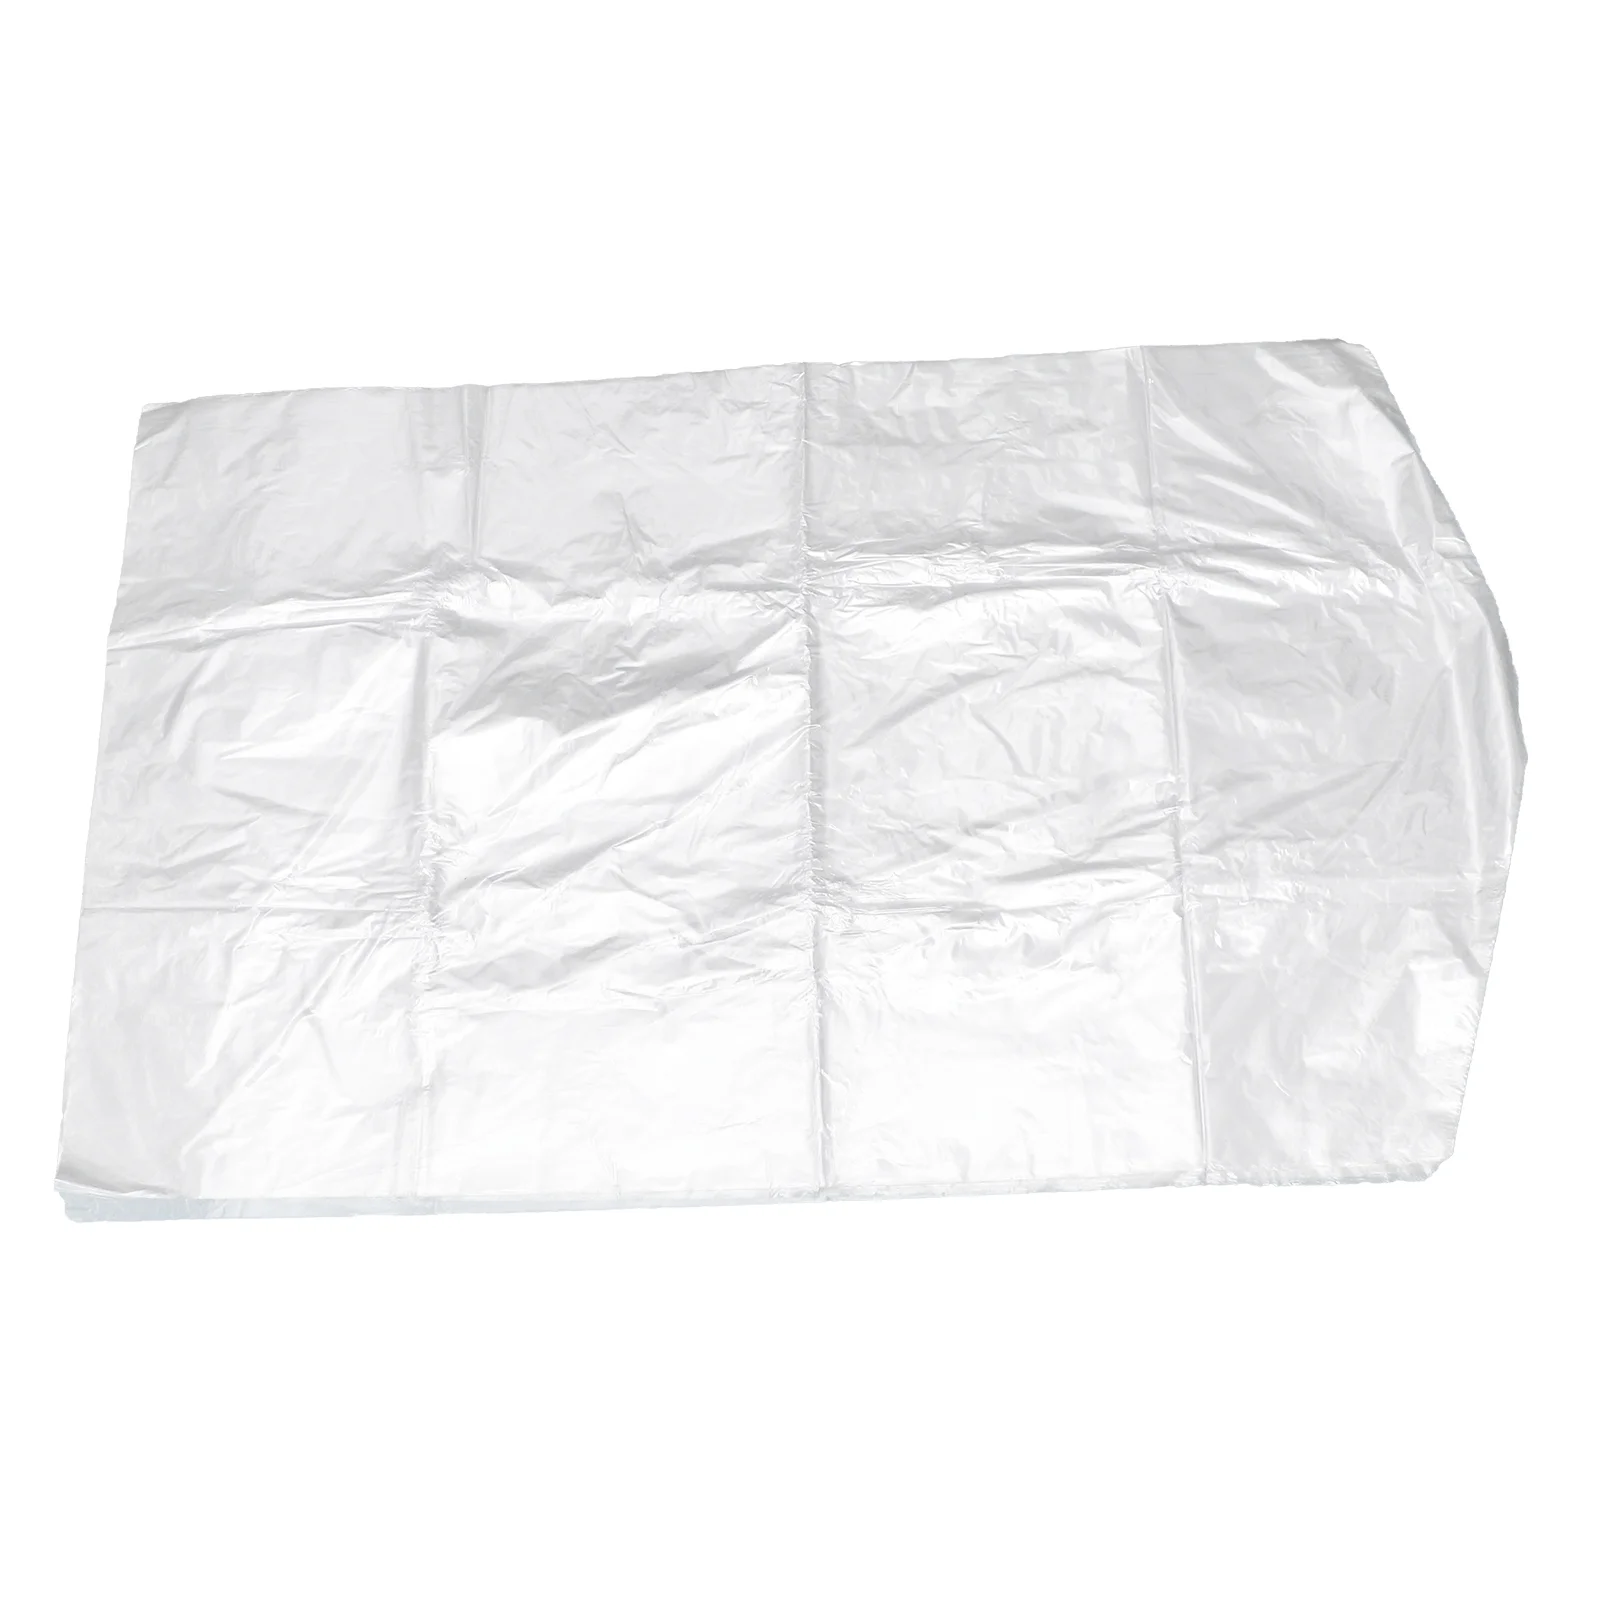 

50 Pcs Garment Cover Dress Bags Closet Clear Poly Bags Transparent Suit Bag Clear Hangers Plastic Clothing Suit Carry Bag